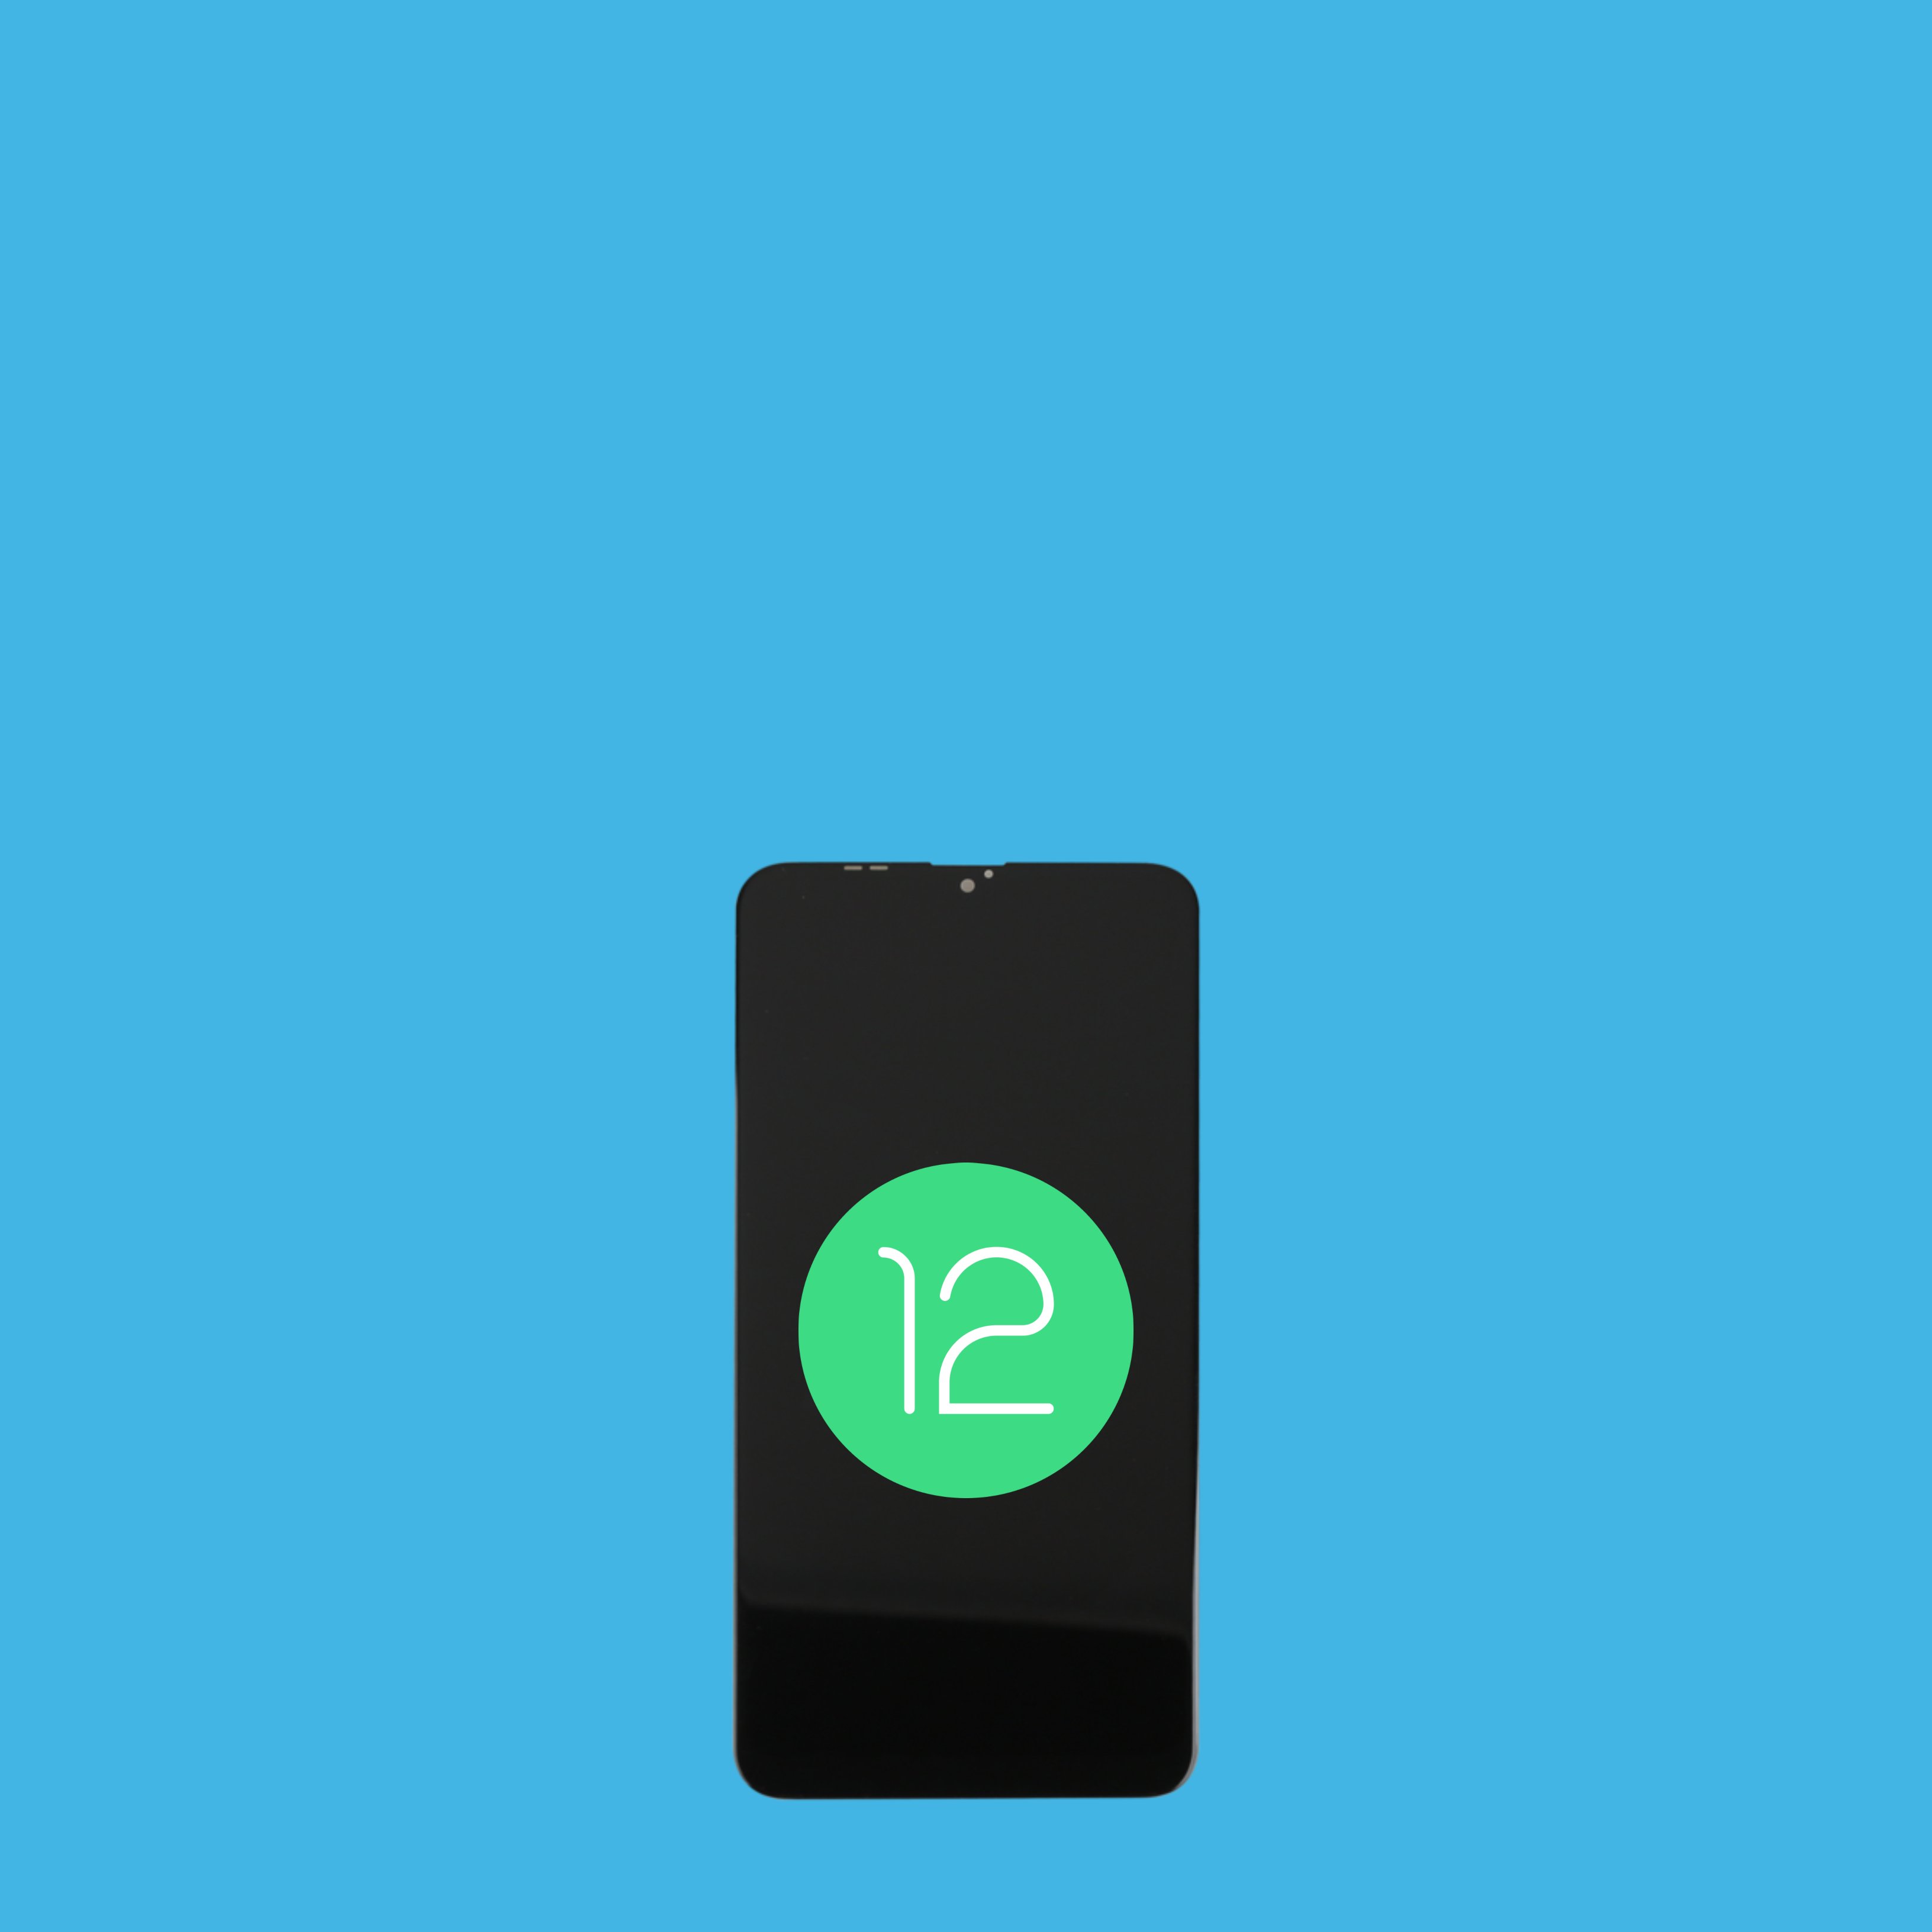 Quines novetats cal conèixer sobre el nou Android 12